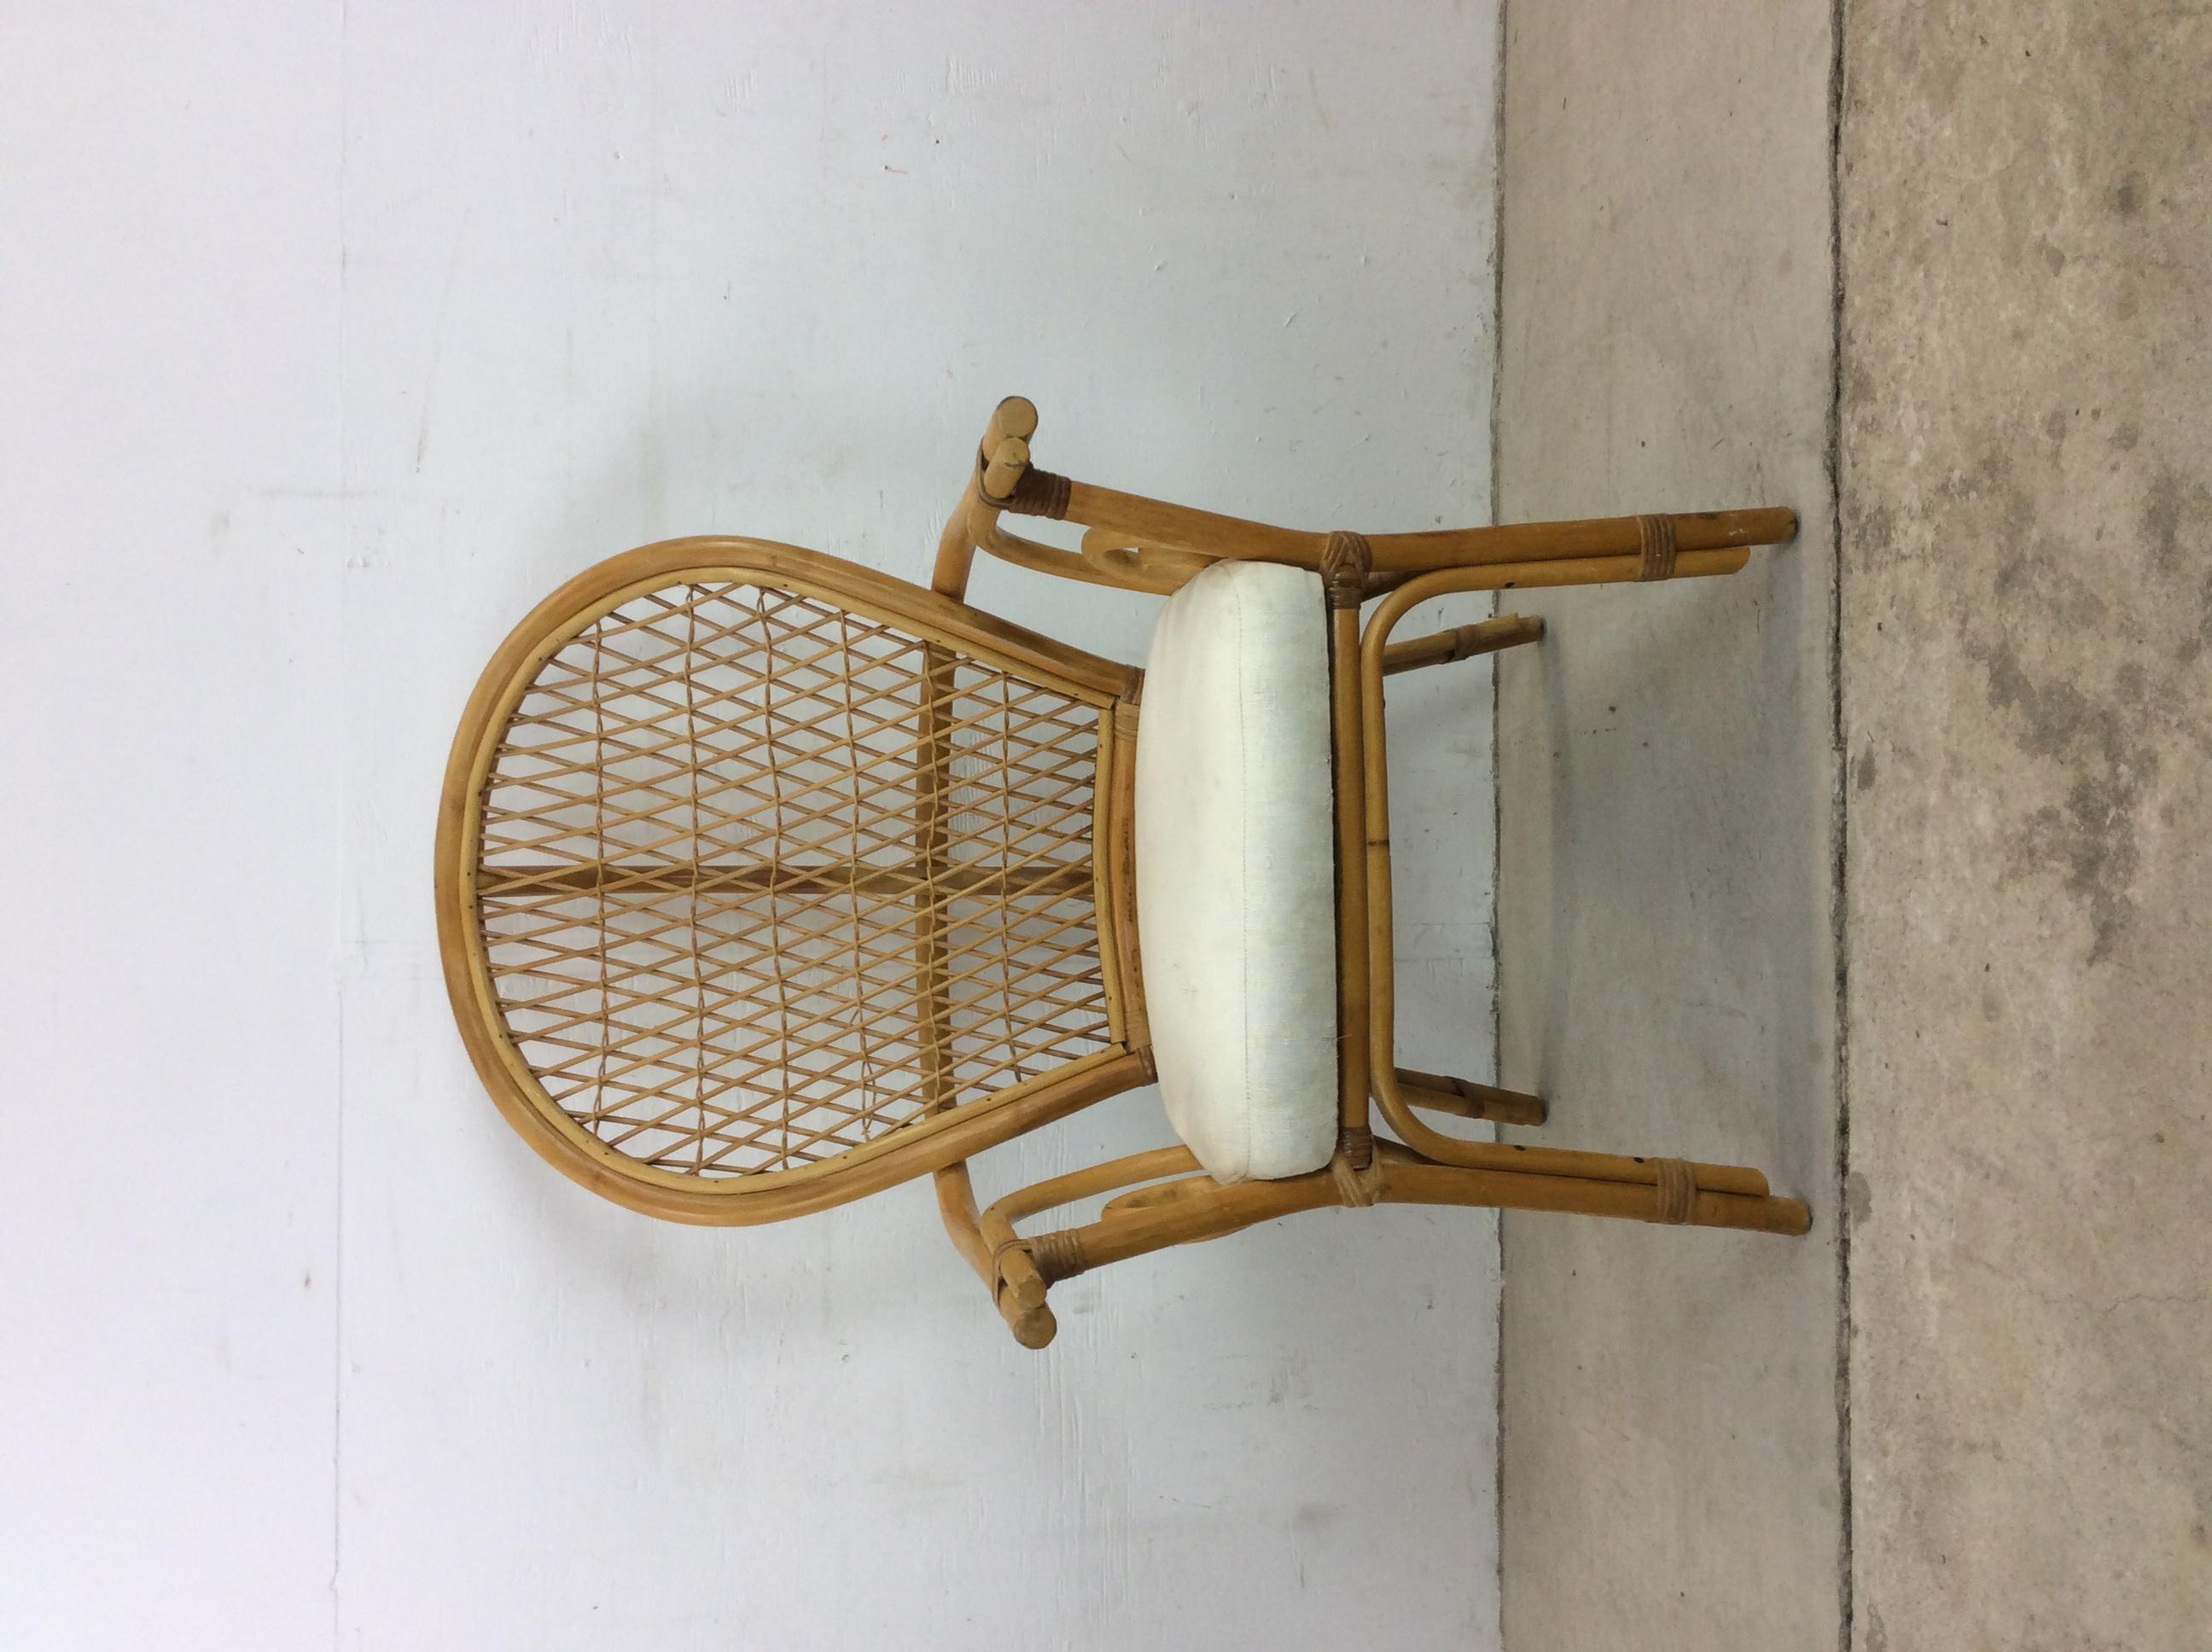 Cette chaise vintage en rotin des années 1970 présente un large dossier en éventail, des détails uniques sur les bras et une assise vintage recouverte de tissu blanc.

Dimensions : 26.5w 25d 44h 18.5sh.
 